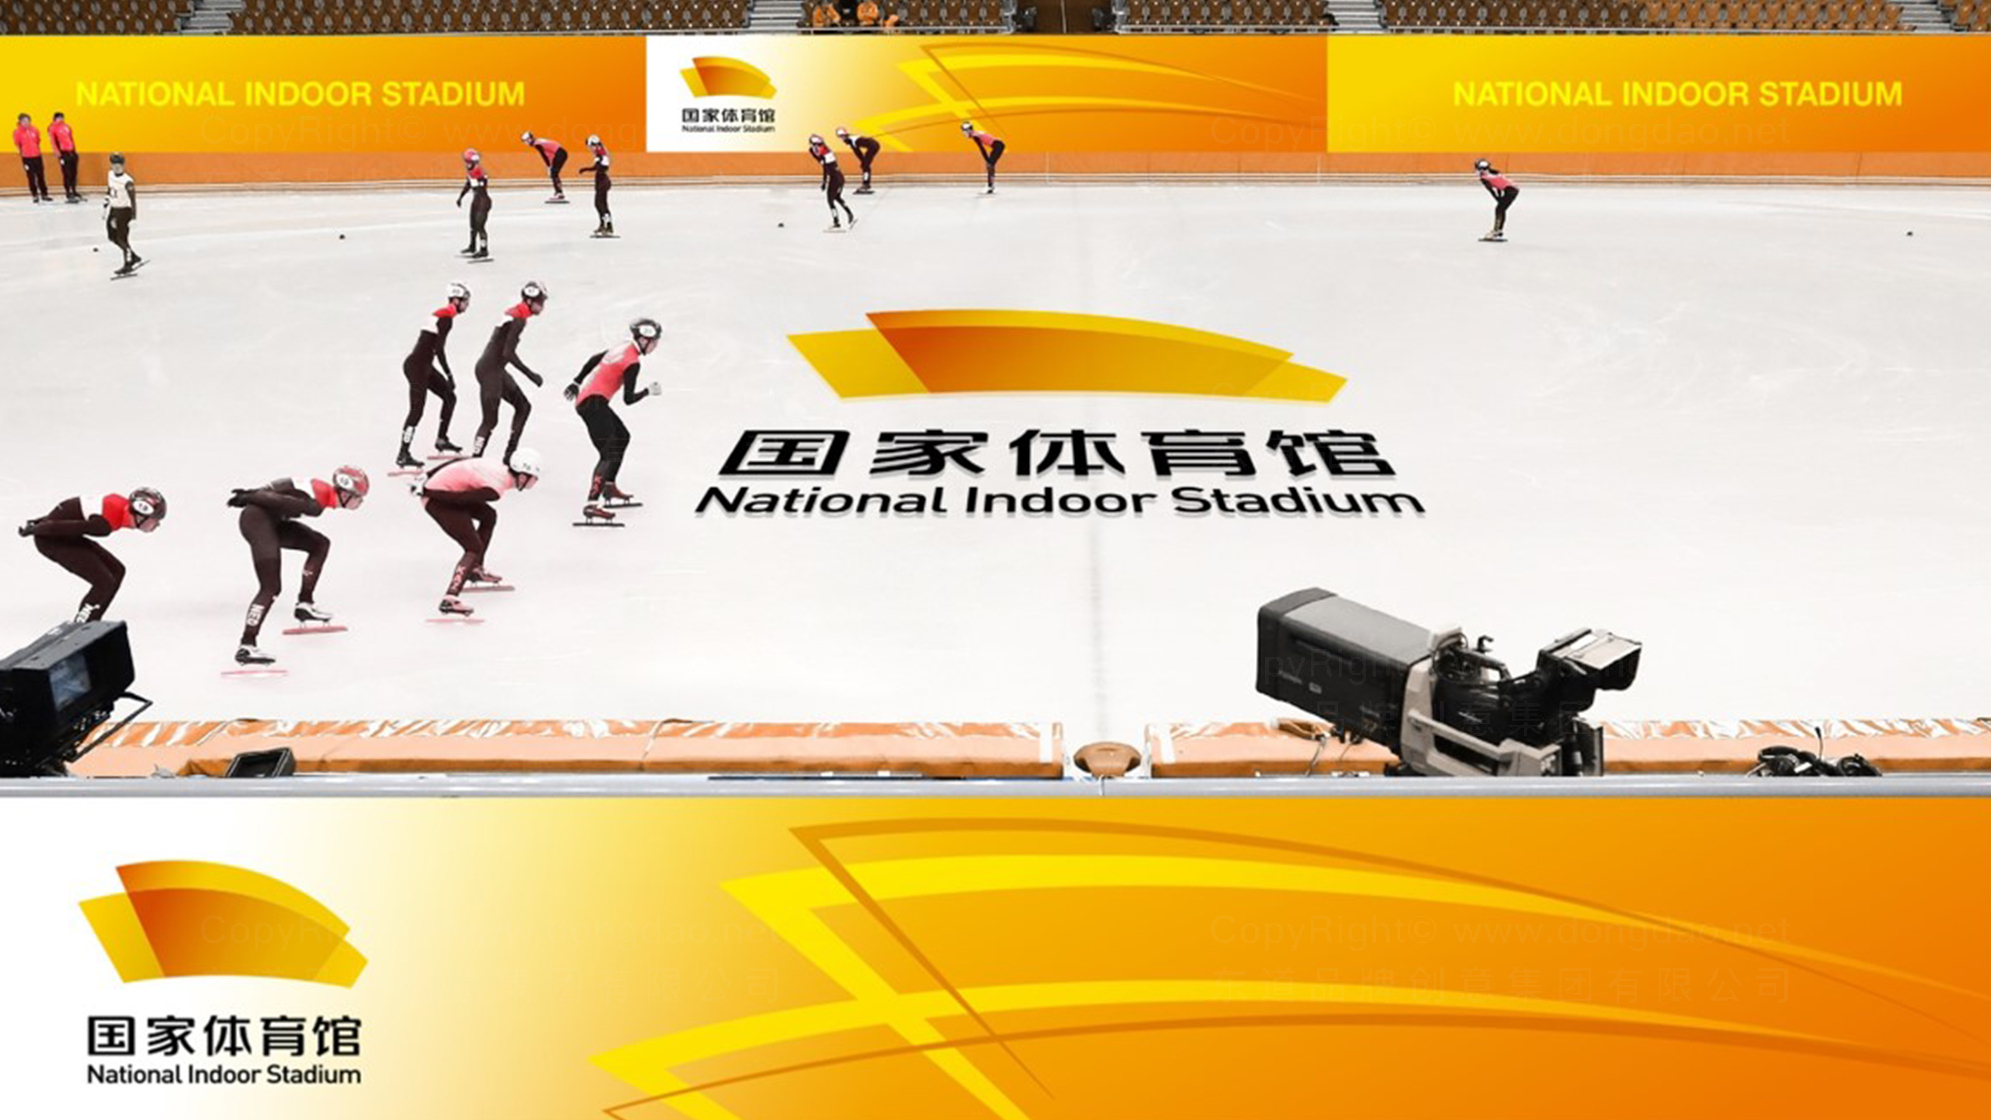 国家体育馆logo设计图片素材